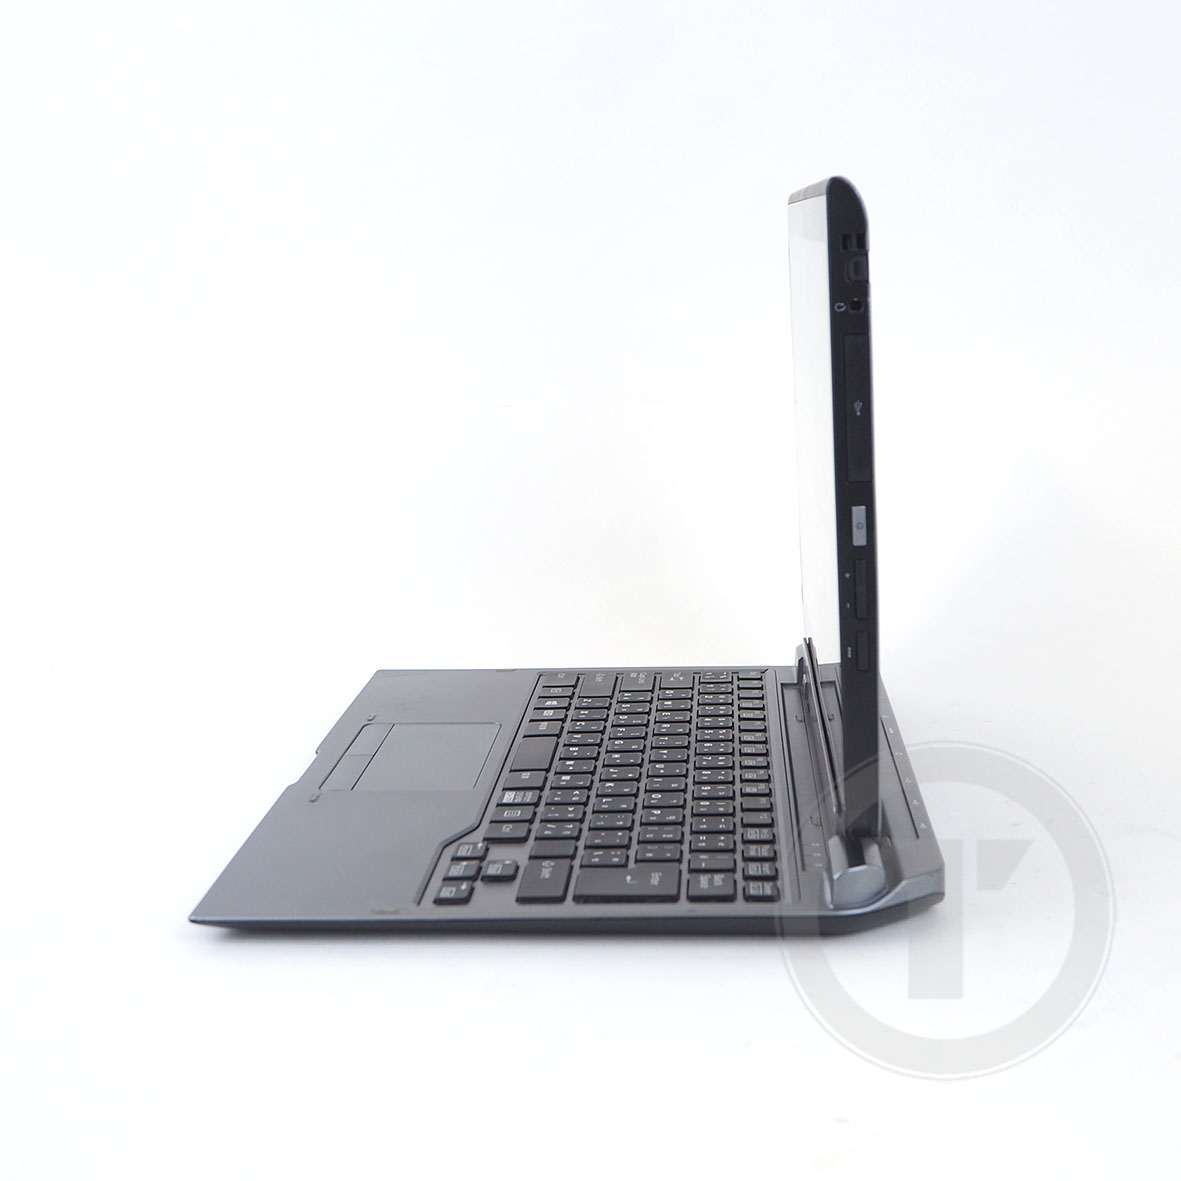 มุมมองเพิ่มเติมของสินค้า โน๊ตบุ๊ค/แท็บเล็ต 2 in 1 Fu Stylistic Q737/P Core i5-7300U RAM 4GB SSD 128GB /HDMI /WiFi /Blth /จอ 13.3” LED Full-HD ถอดจอได้ windows tablet Used laptop Refhed computer 2022 มีประกัน By Totalsol